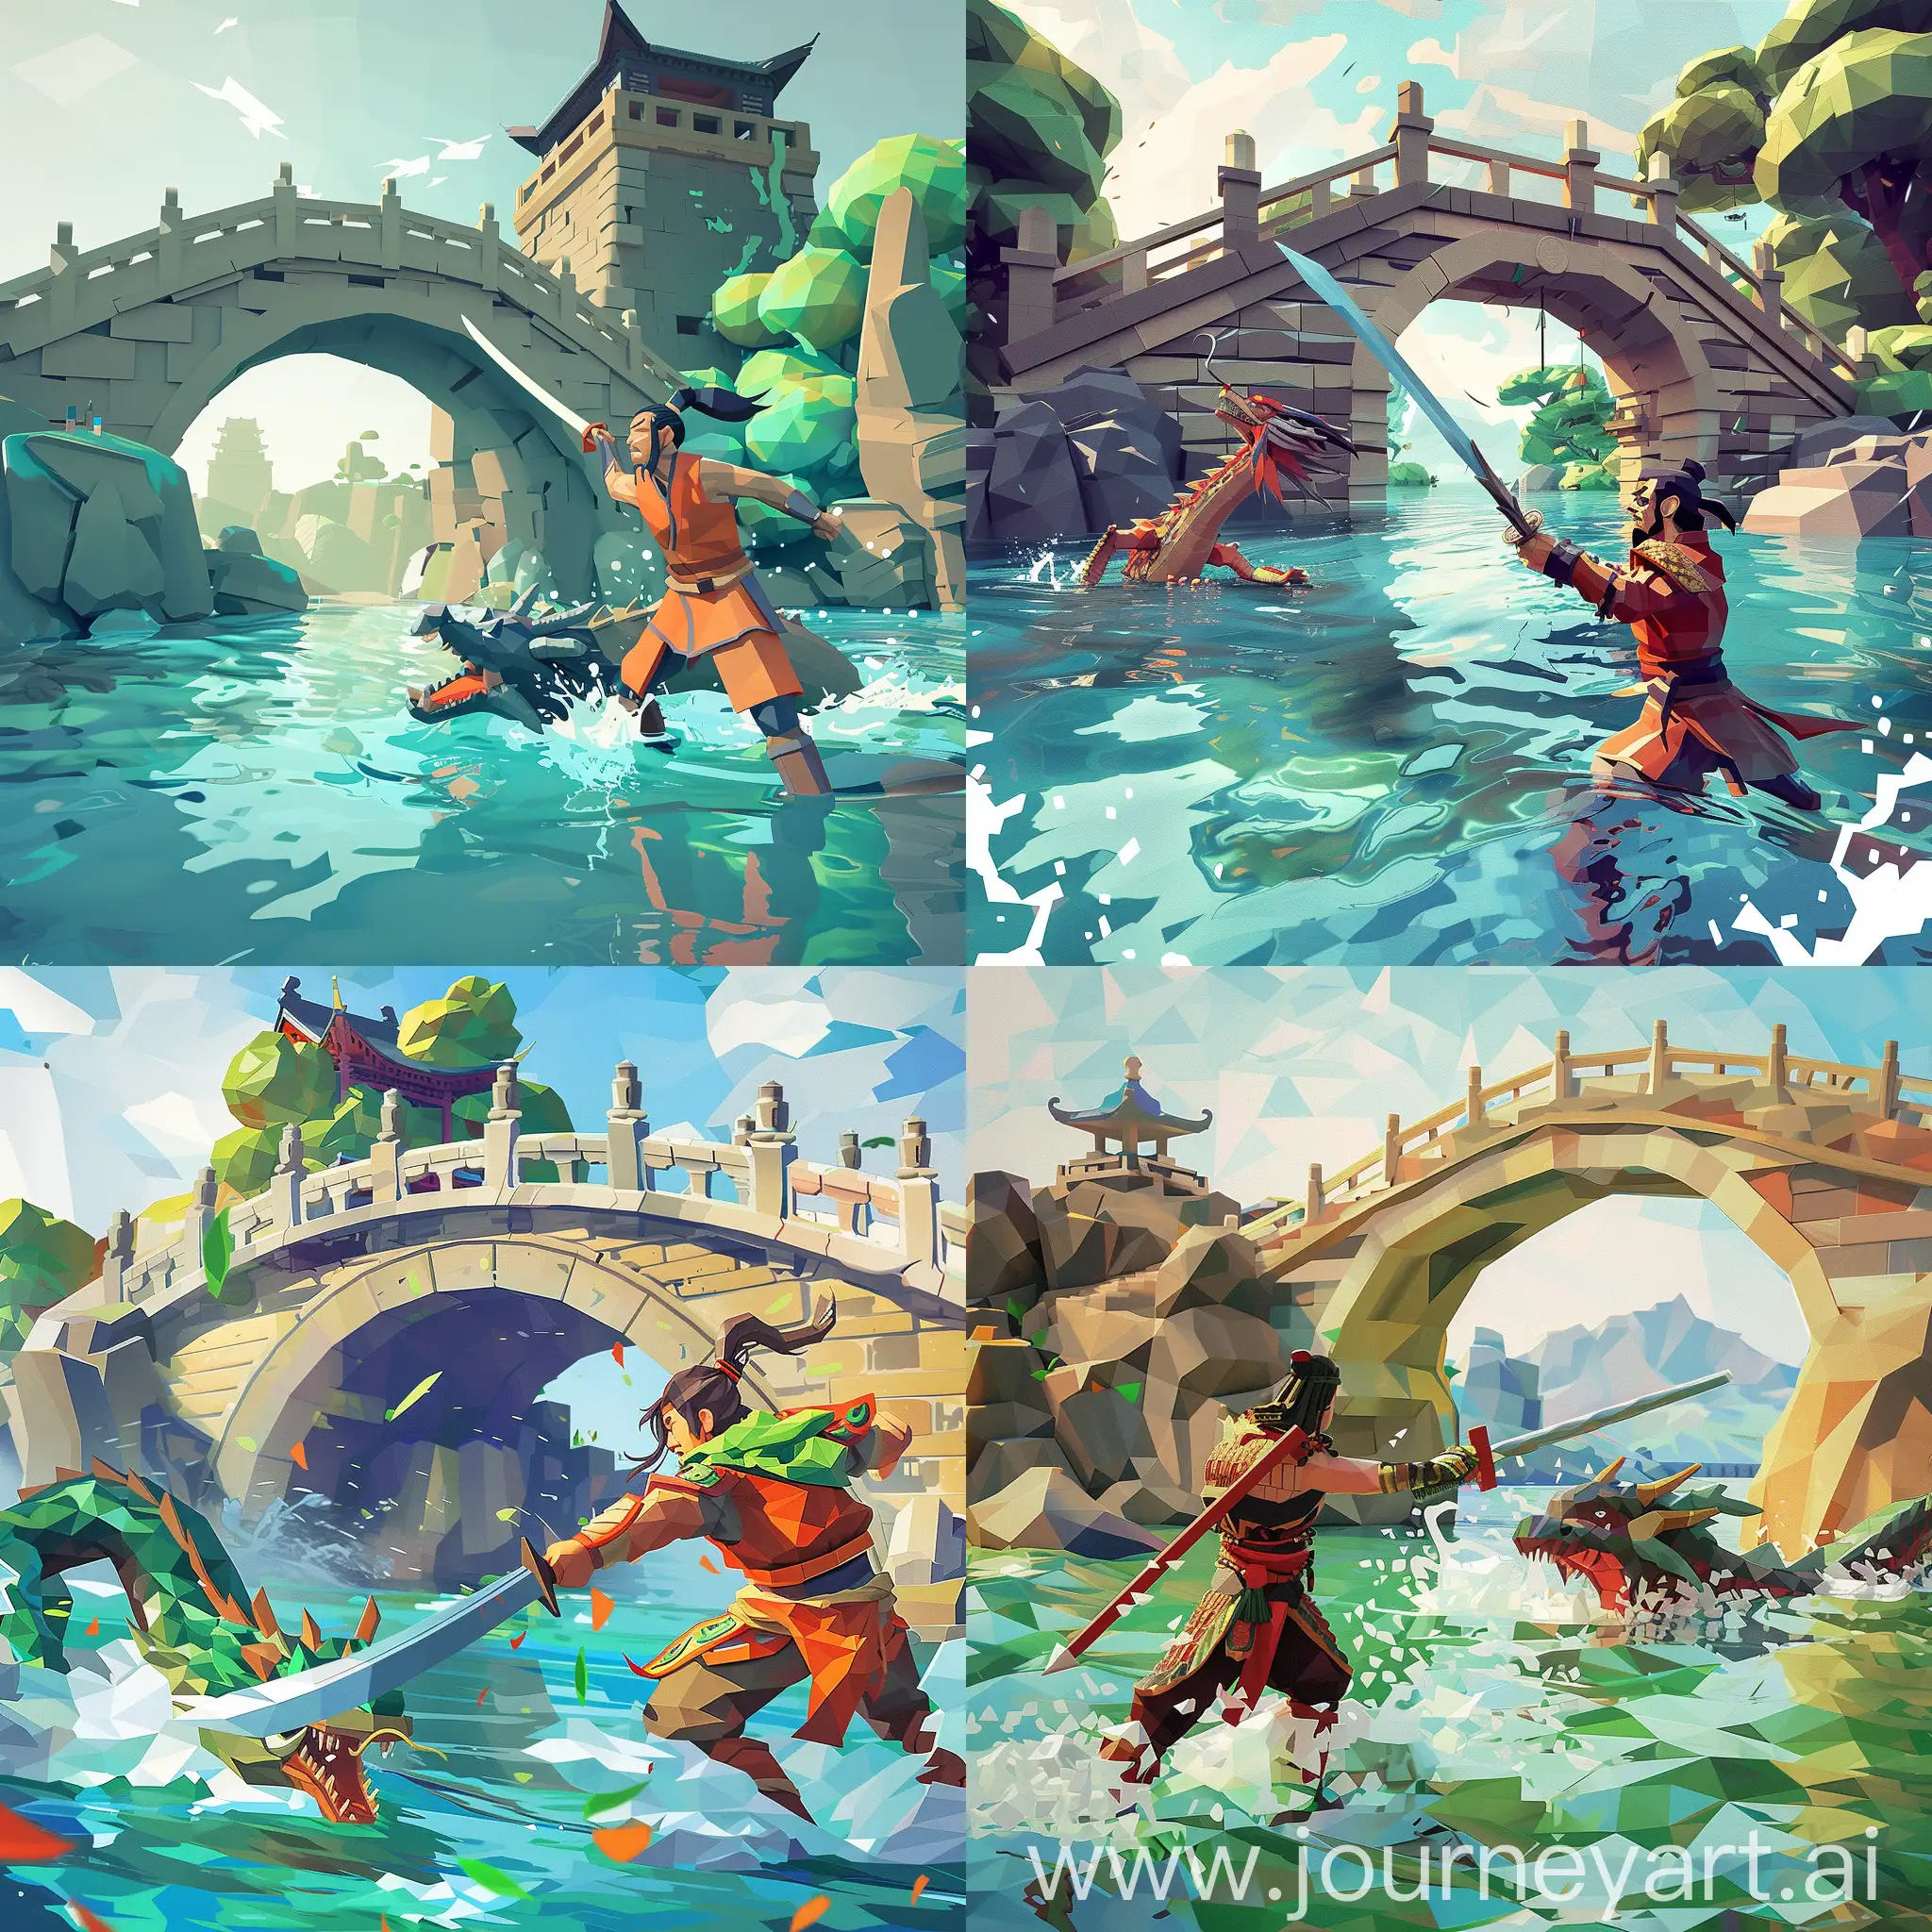 一个中国古代英雄拿着剑与水中的蛟龙作战，背景是个石桥，石桥造型古朴，画面明亮，low poly风格